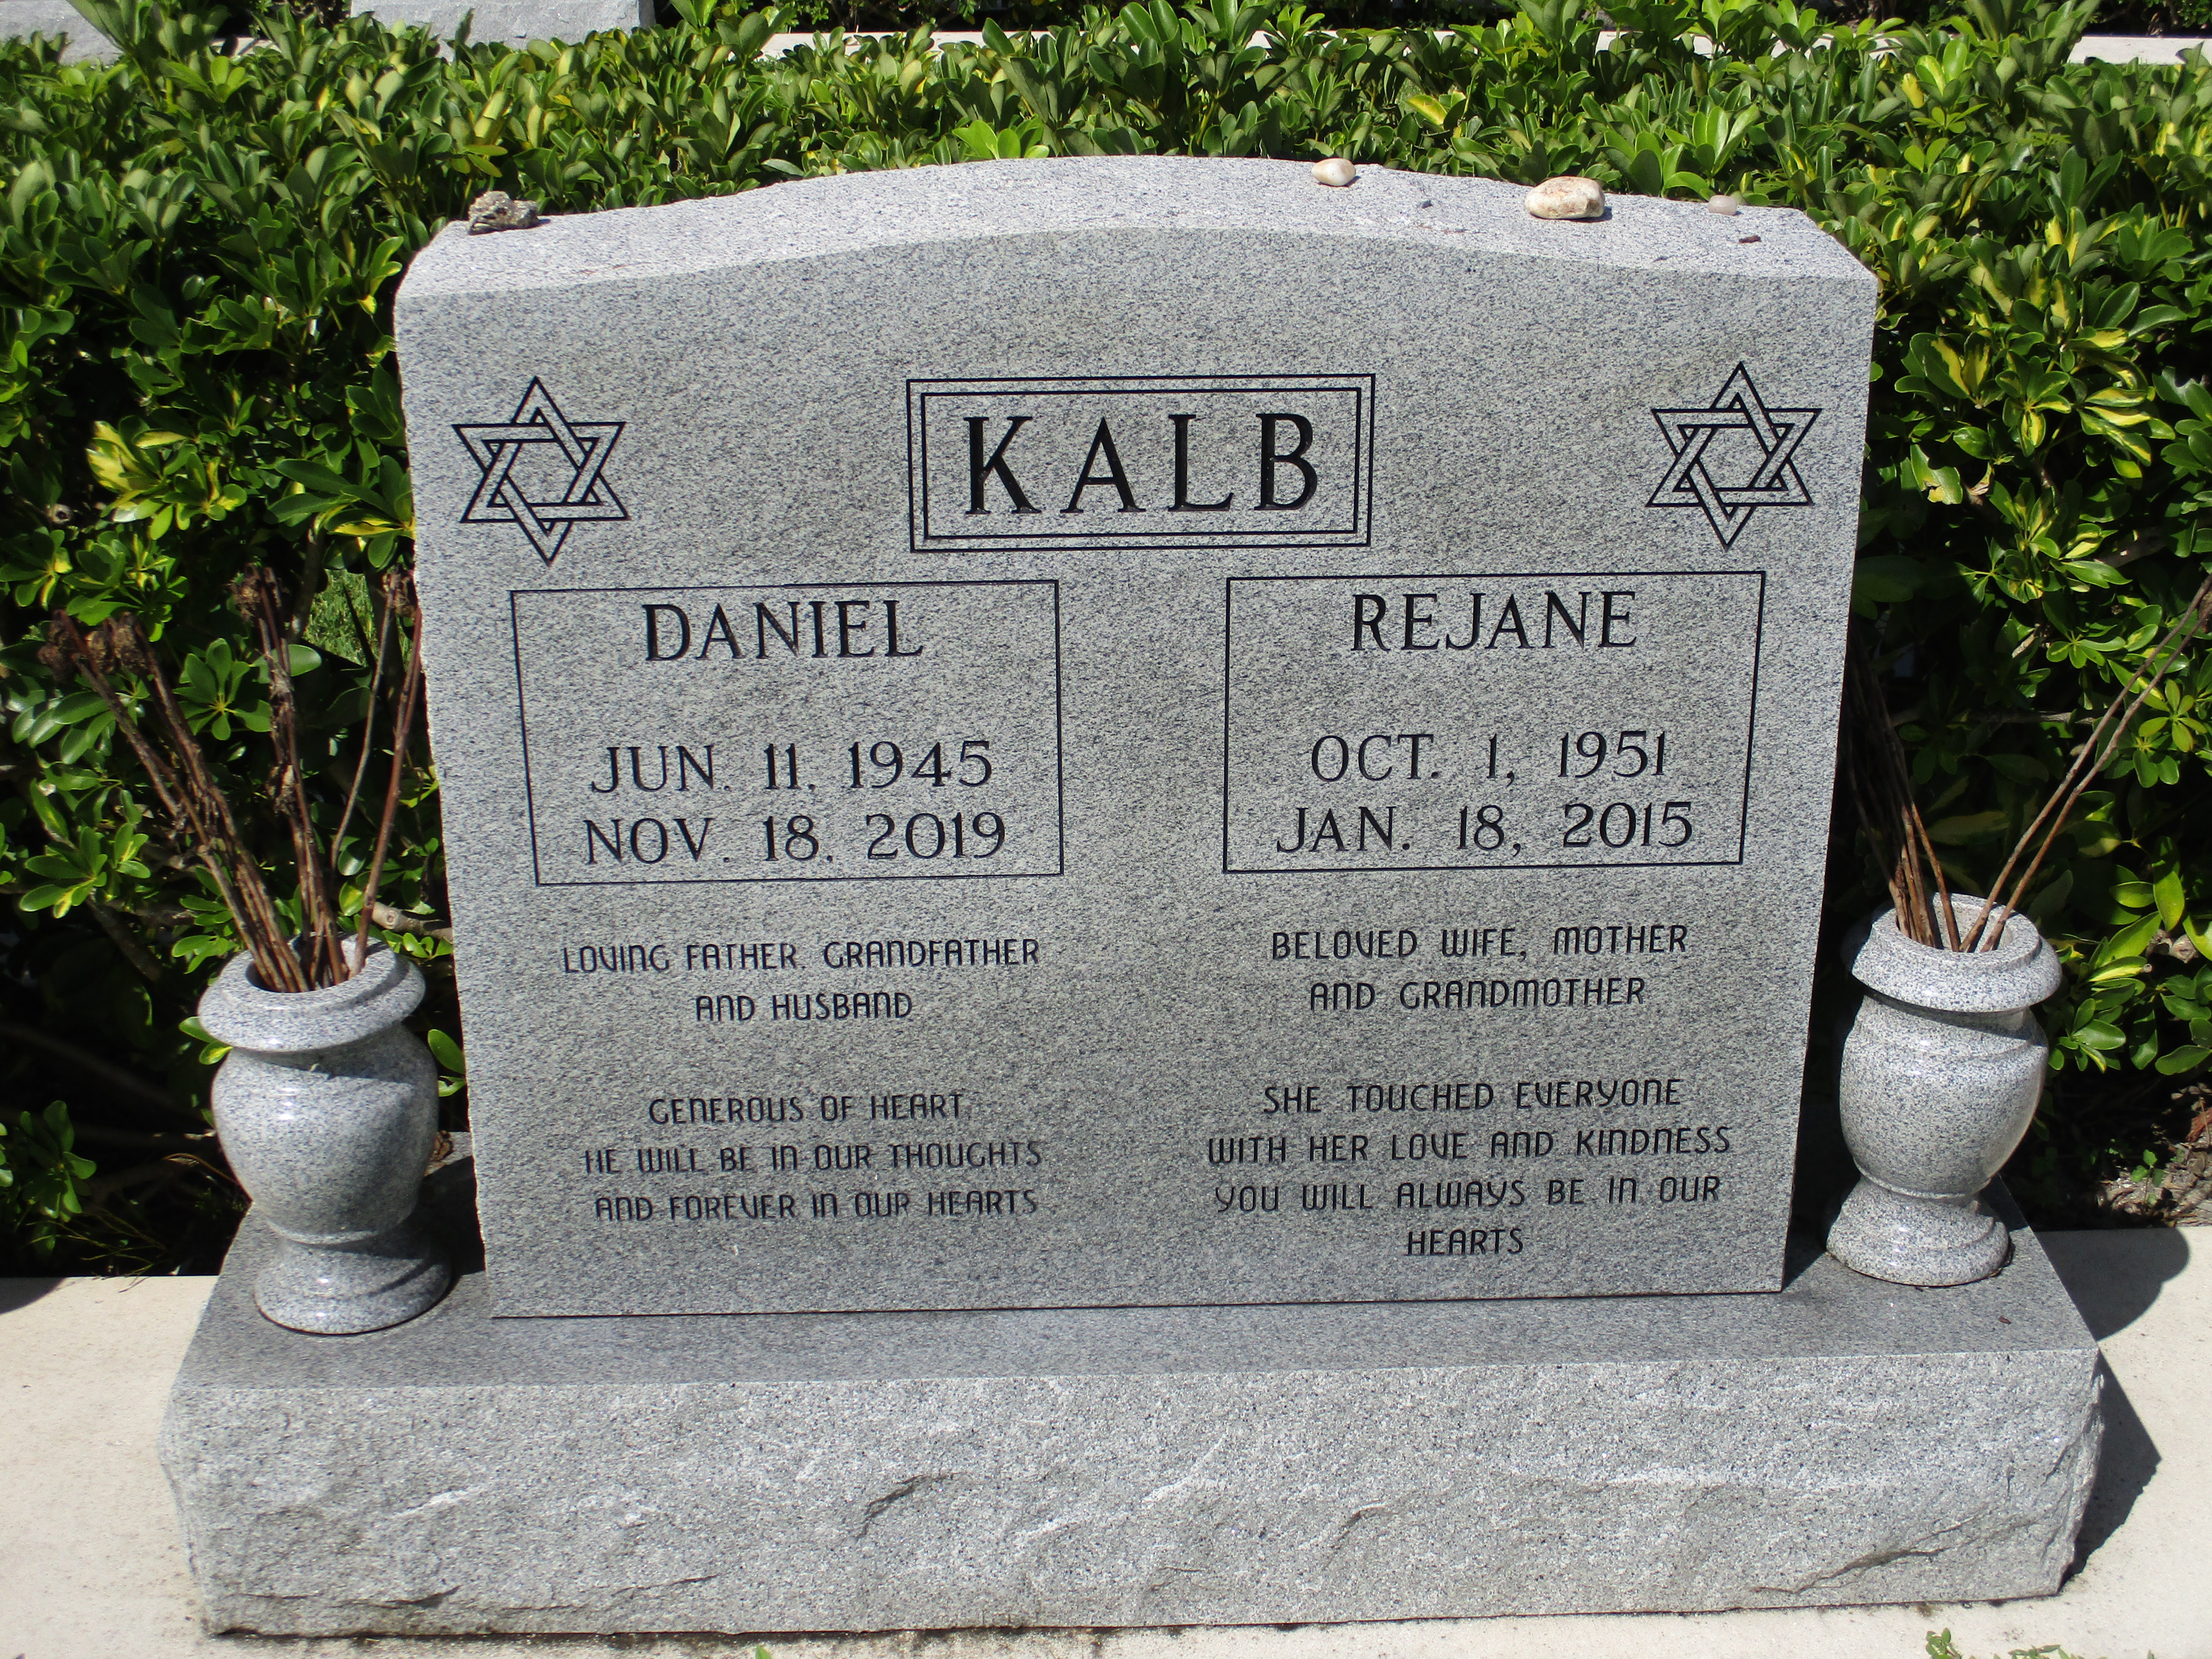 Daniel Kalb